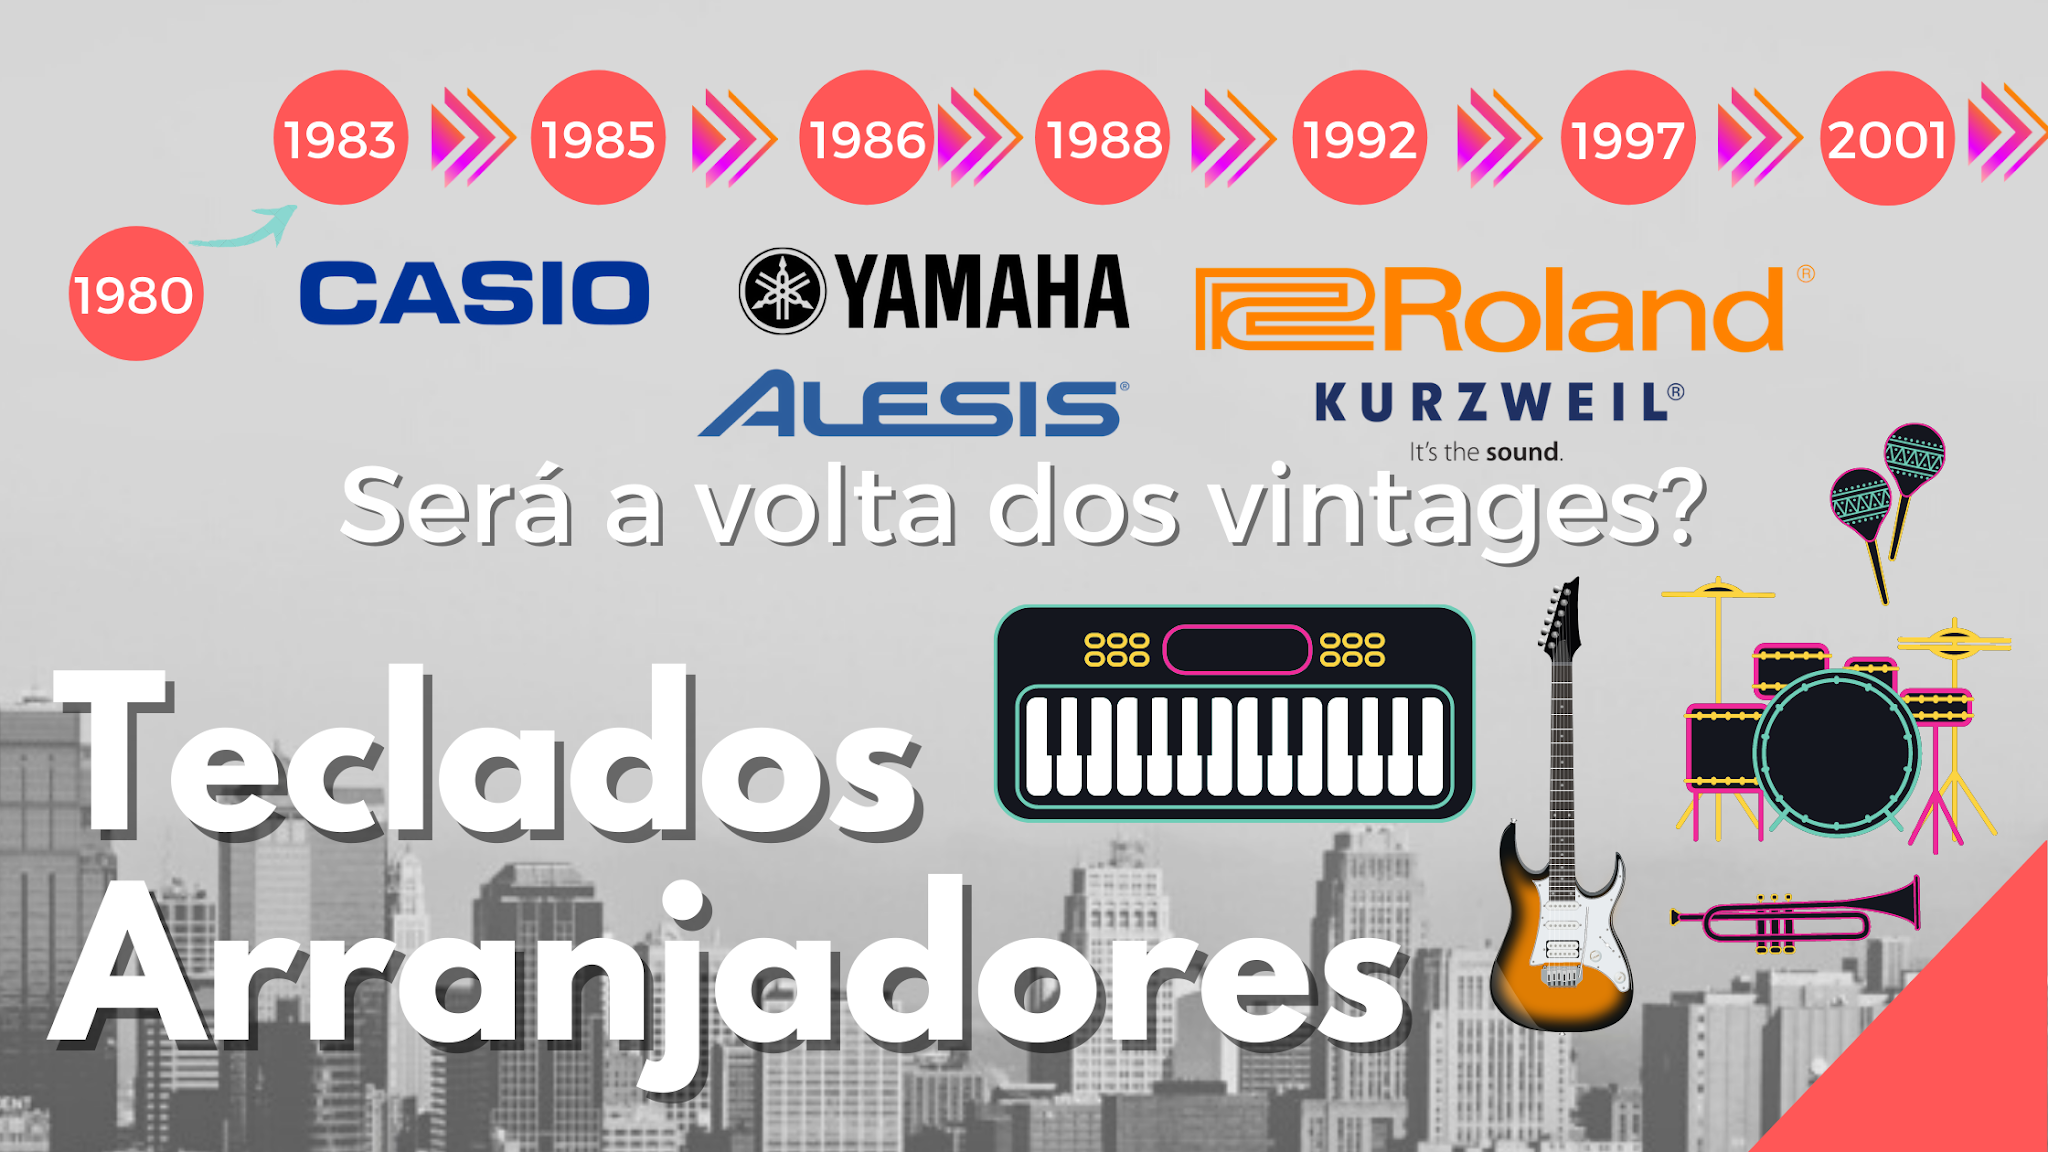 A seguir, você poderá ver a imagem da evolução dos teclados musicais e teclados arranjadores desde 1980 até os dias de hoje.